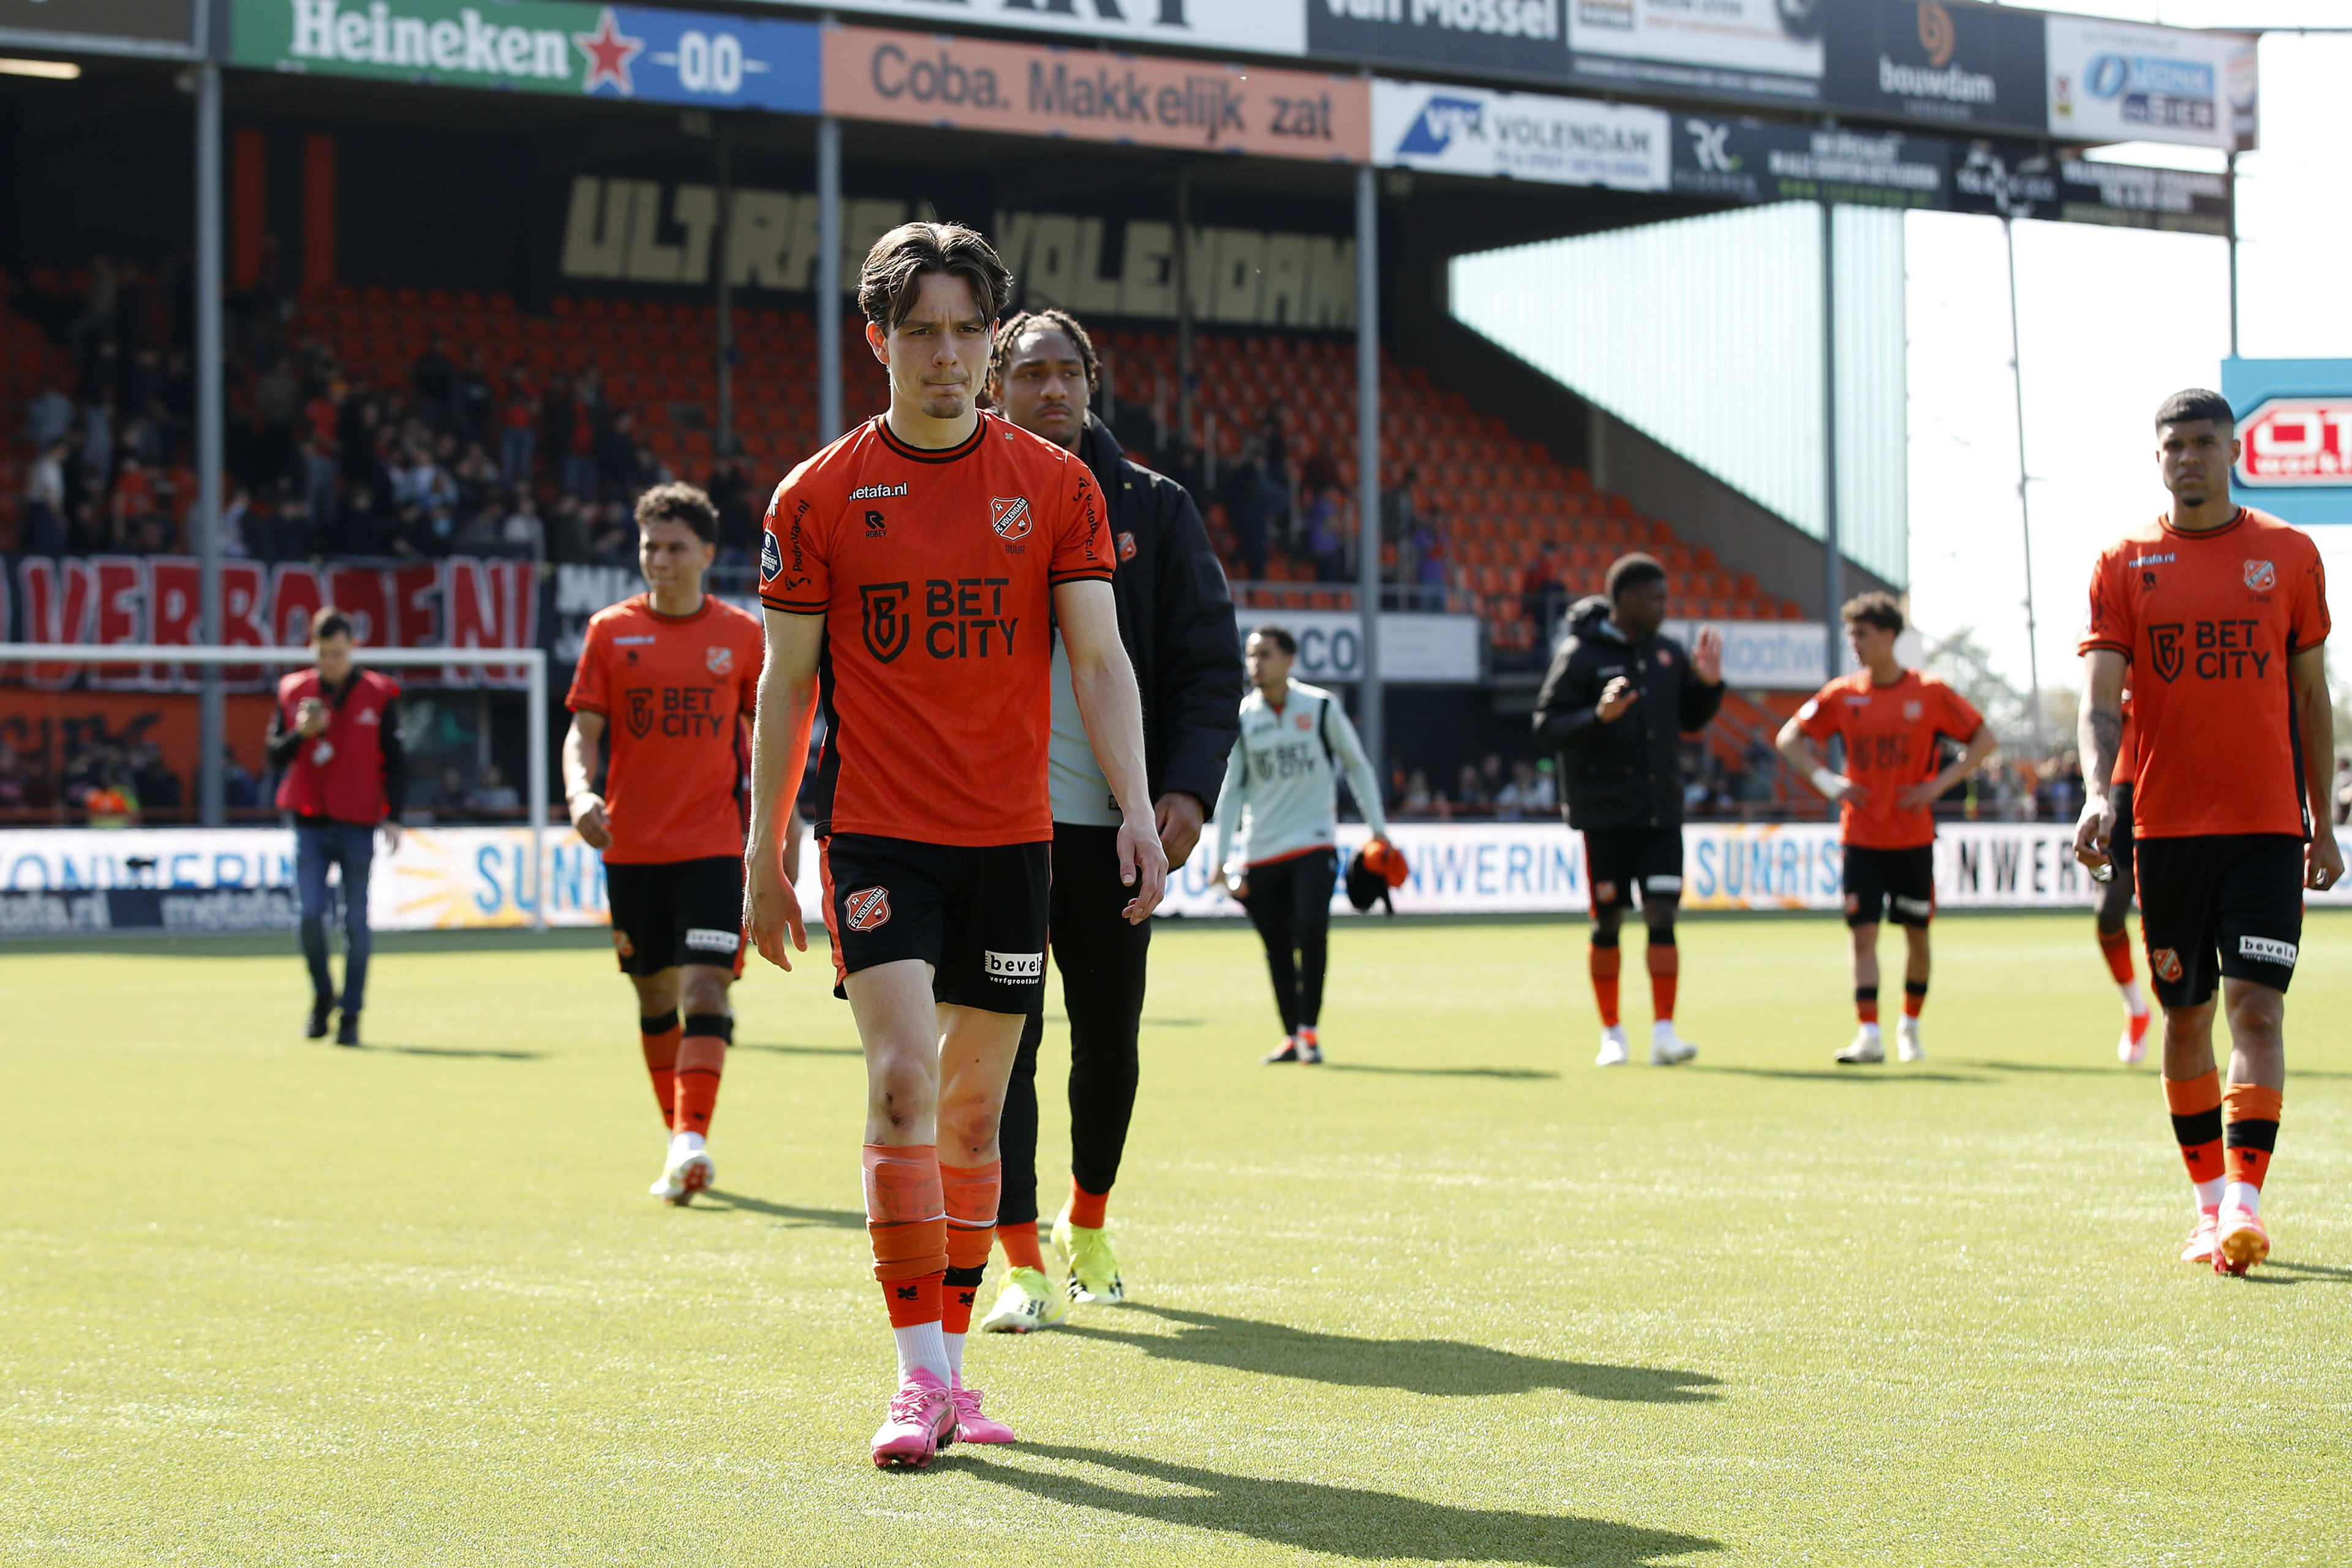 Kater voor FC Volendam, Ajax gooit ploeg na twee jaar uit Eredivisie